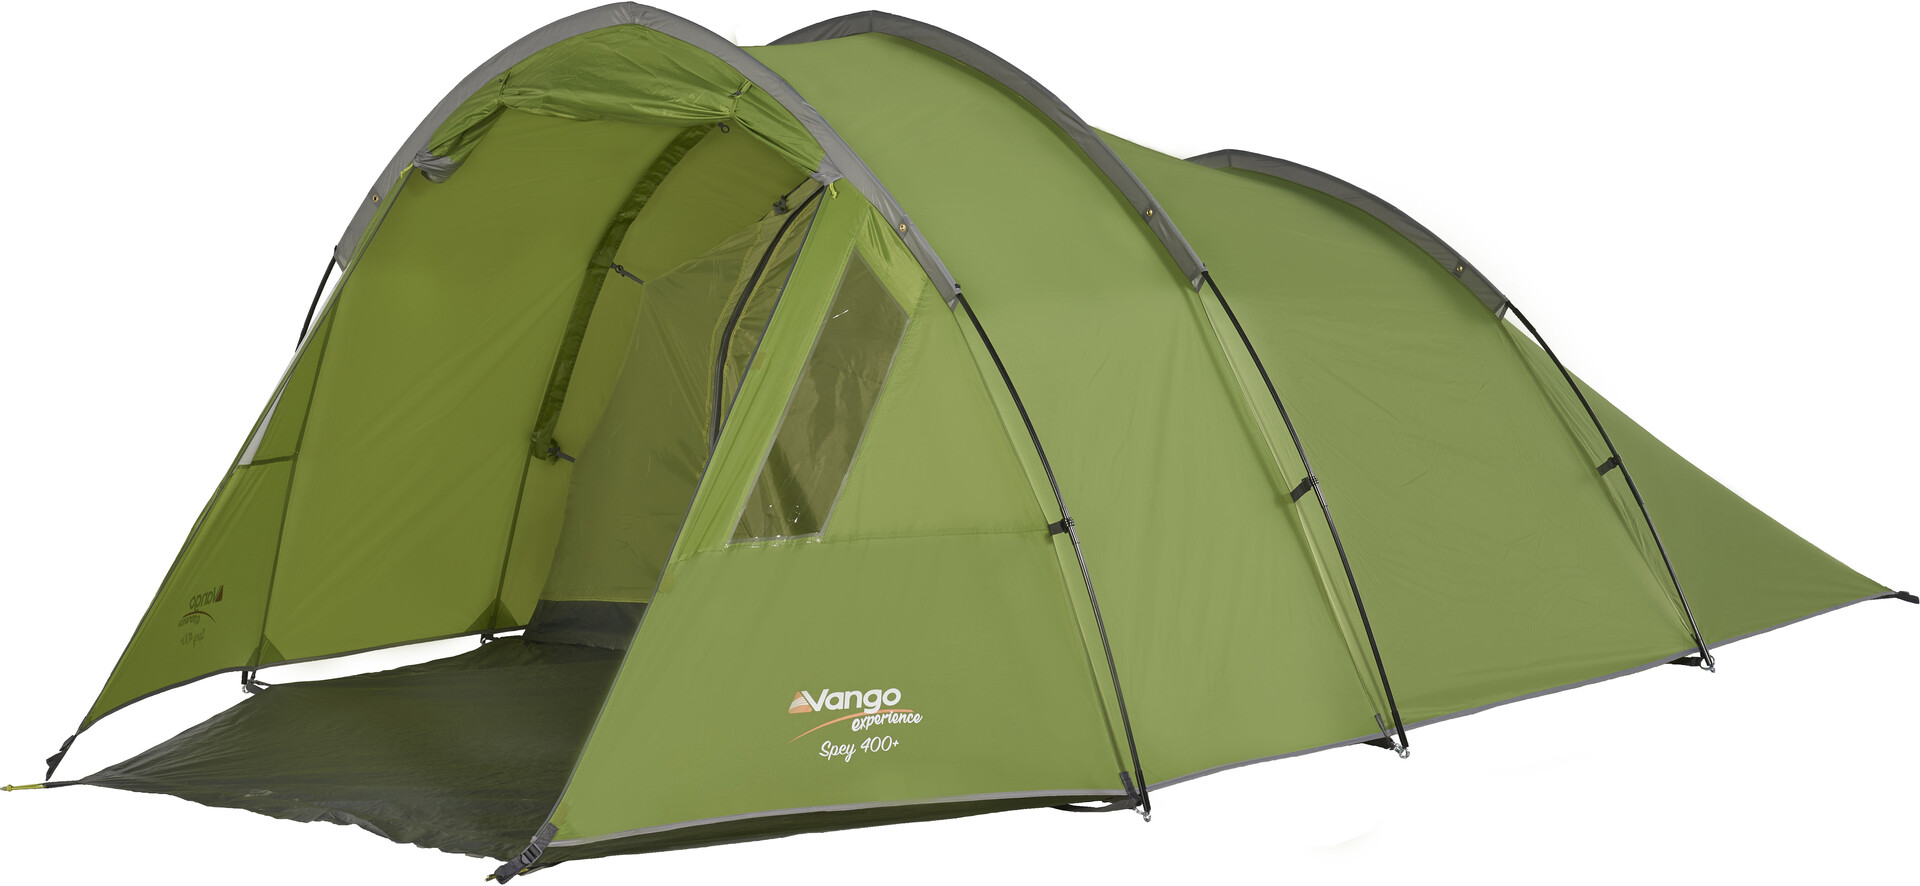 Easycamp Waterproof Corona 300 Unisex Outdoor Tunnel Tent